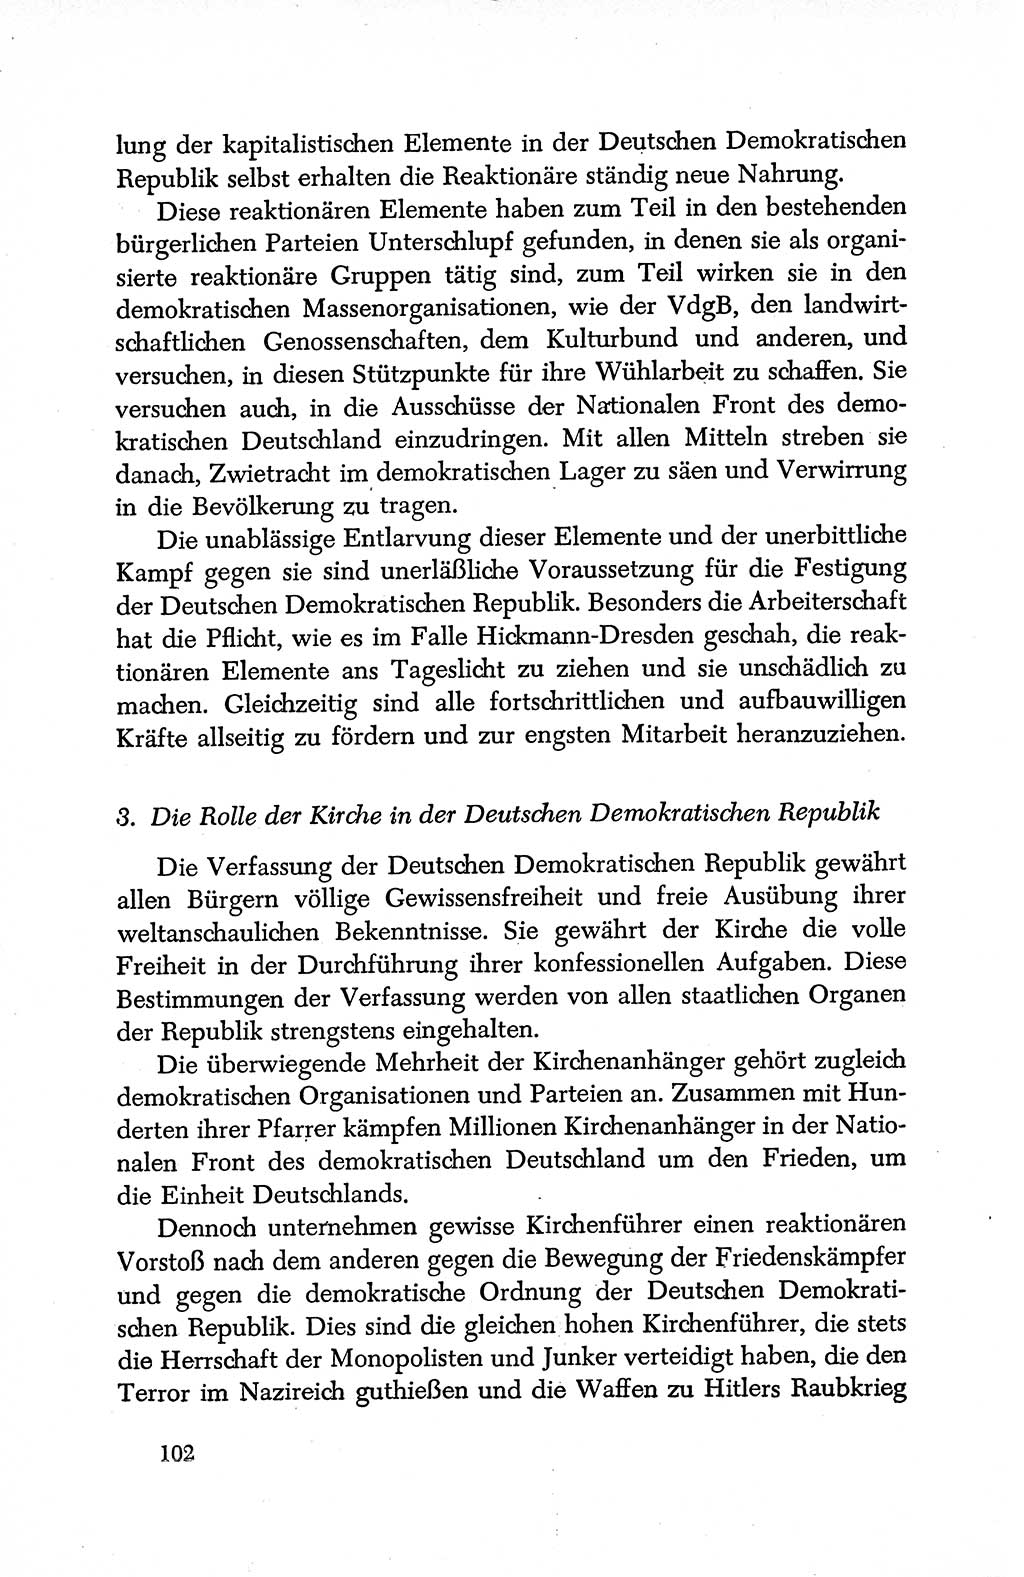 Dokumente der Sozialistischen Einheitspartei Deutschlands (SED) [Deutsche Demokratische Republik (DDR)] 1950-1952, Seite 102 (Dok. SED DDR 1950-1952, S. 102)